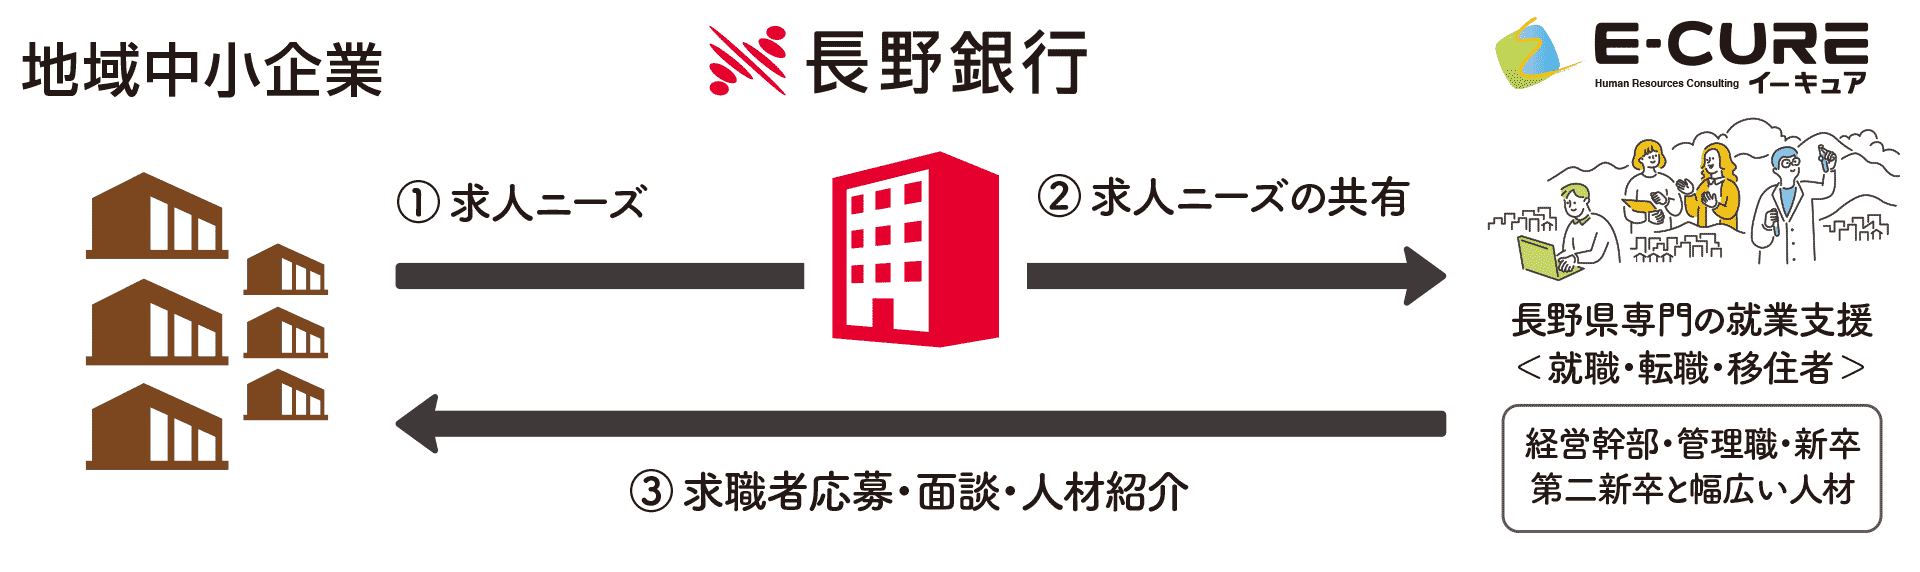 長野銀行、イーキュア業務提携業務フロー図